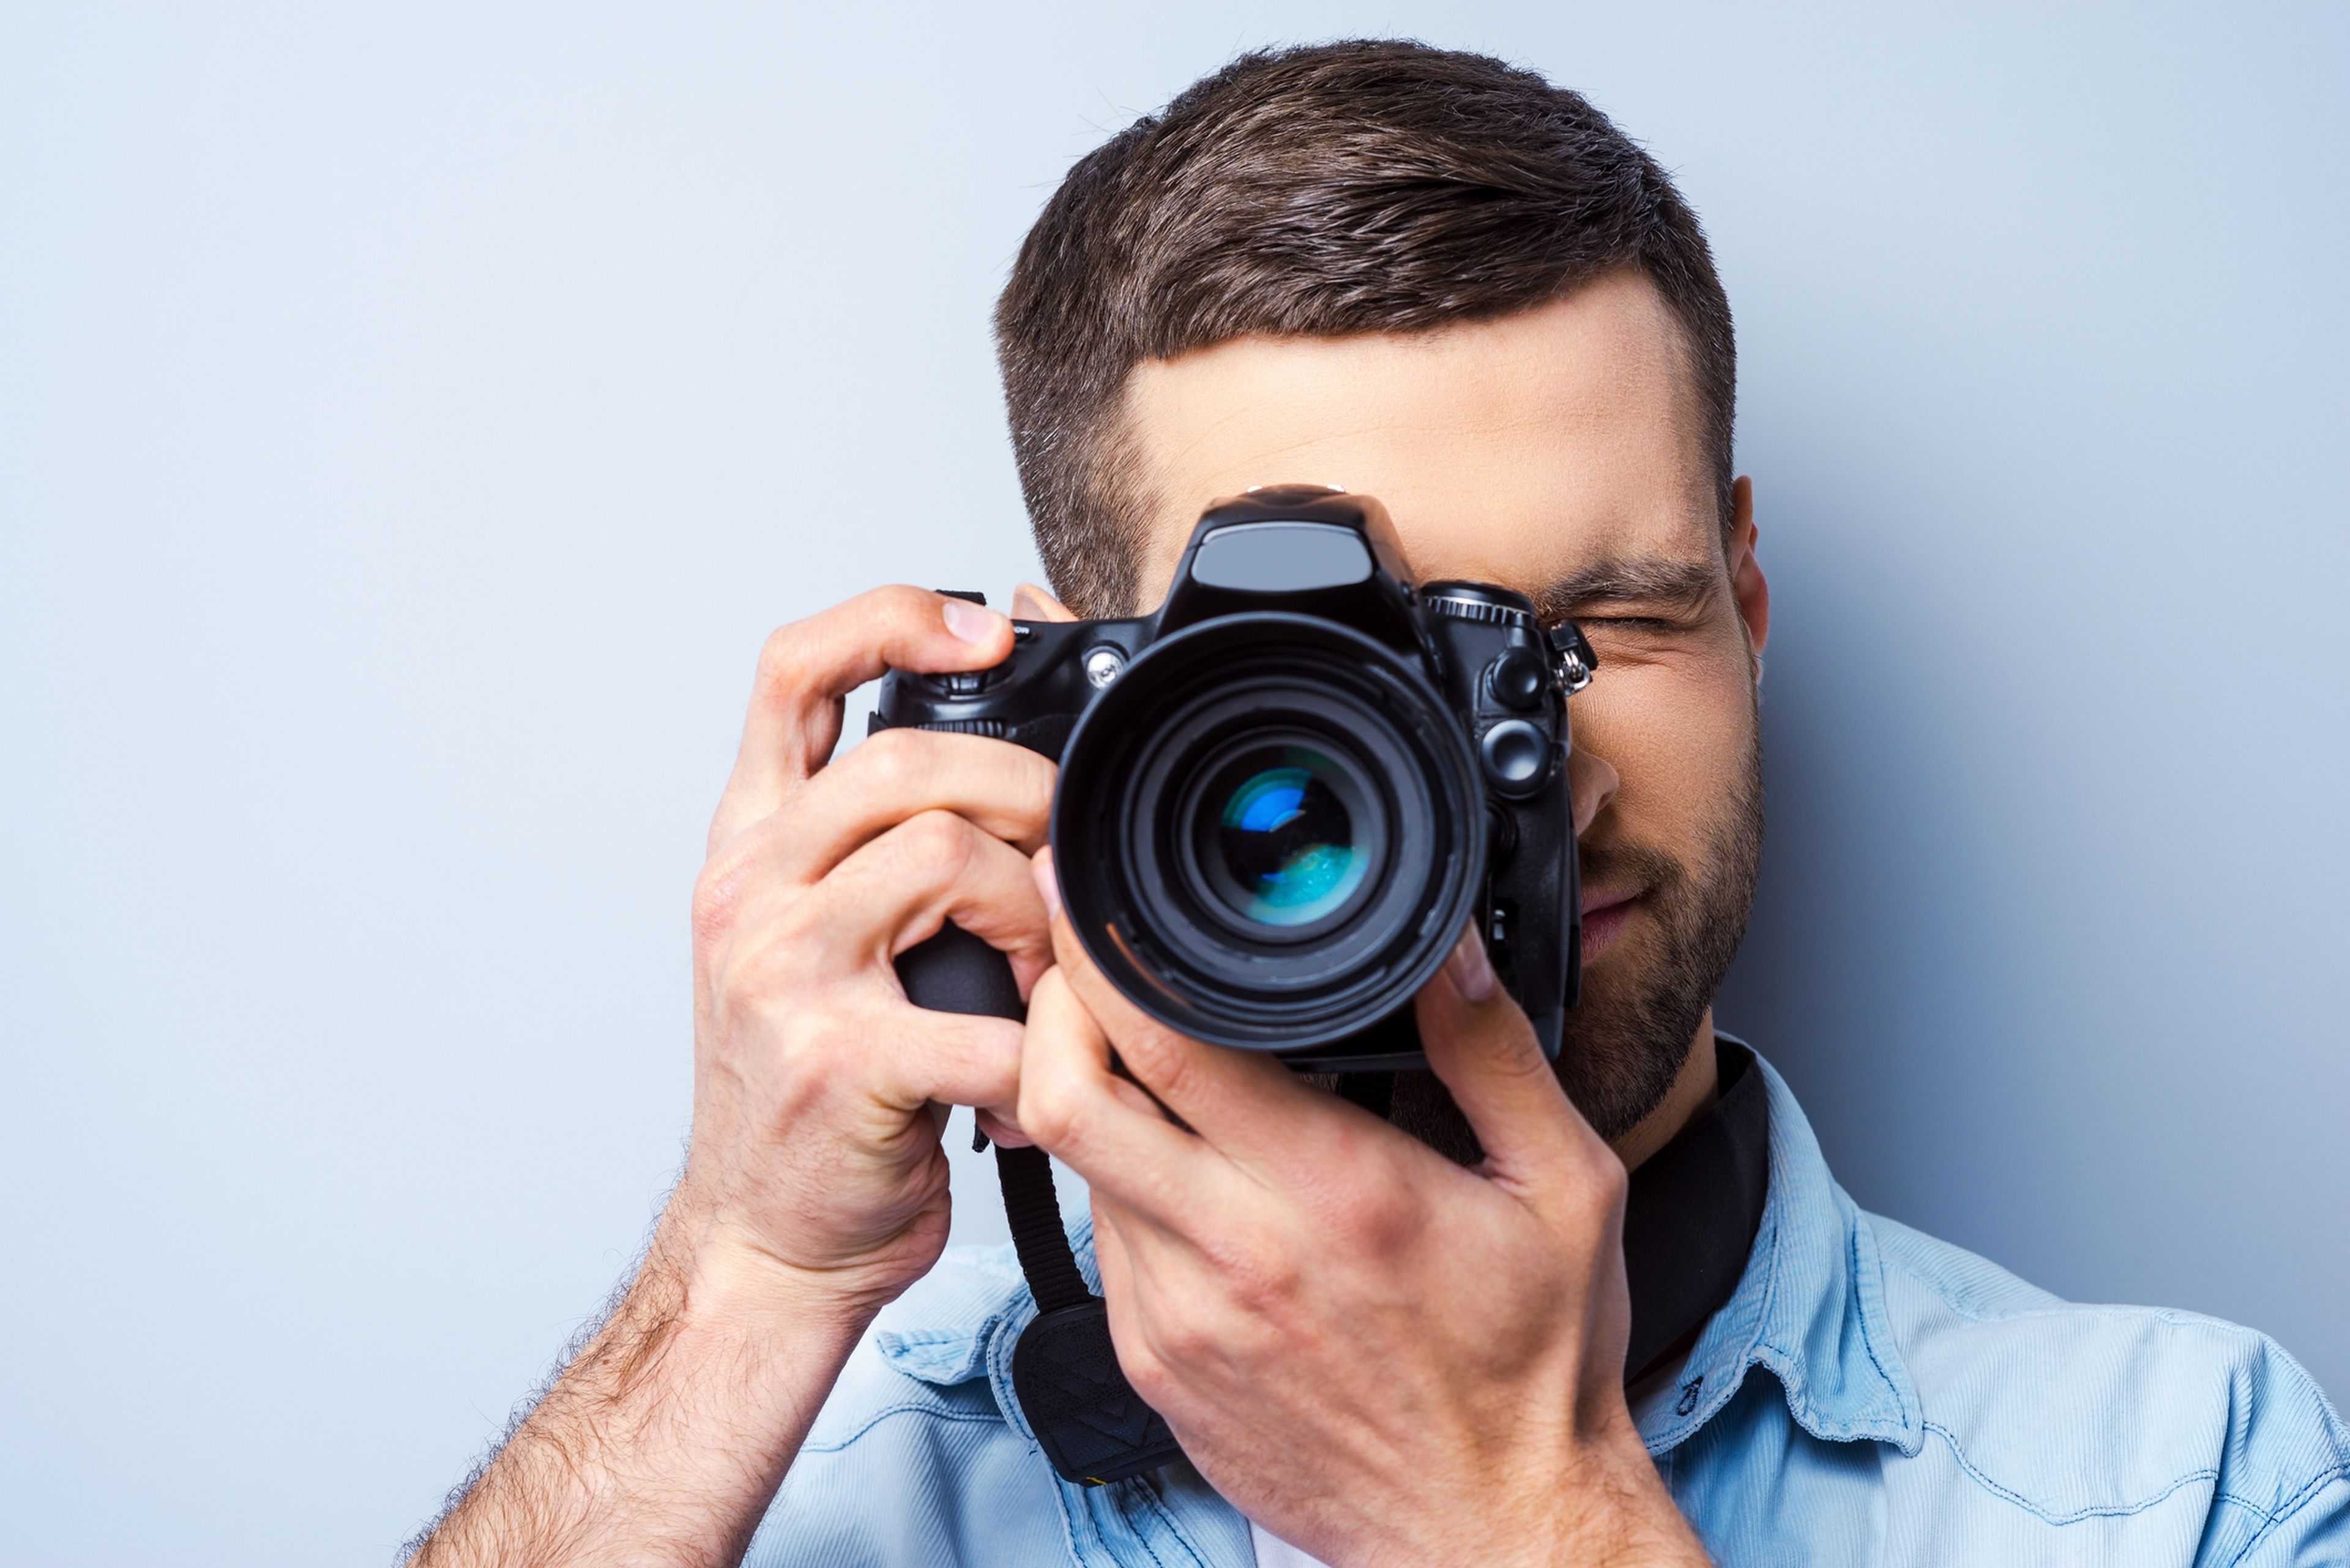 Este el fallo cometen los fotógrafos novatos con su cámara, según un experto | Computer Hoy